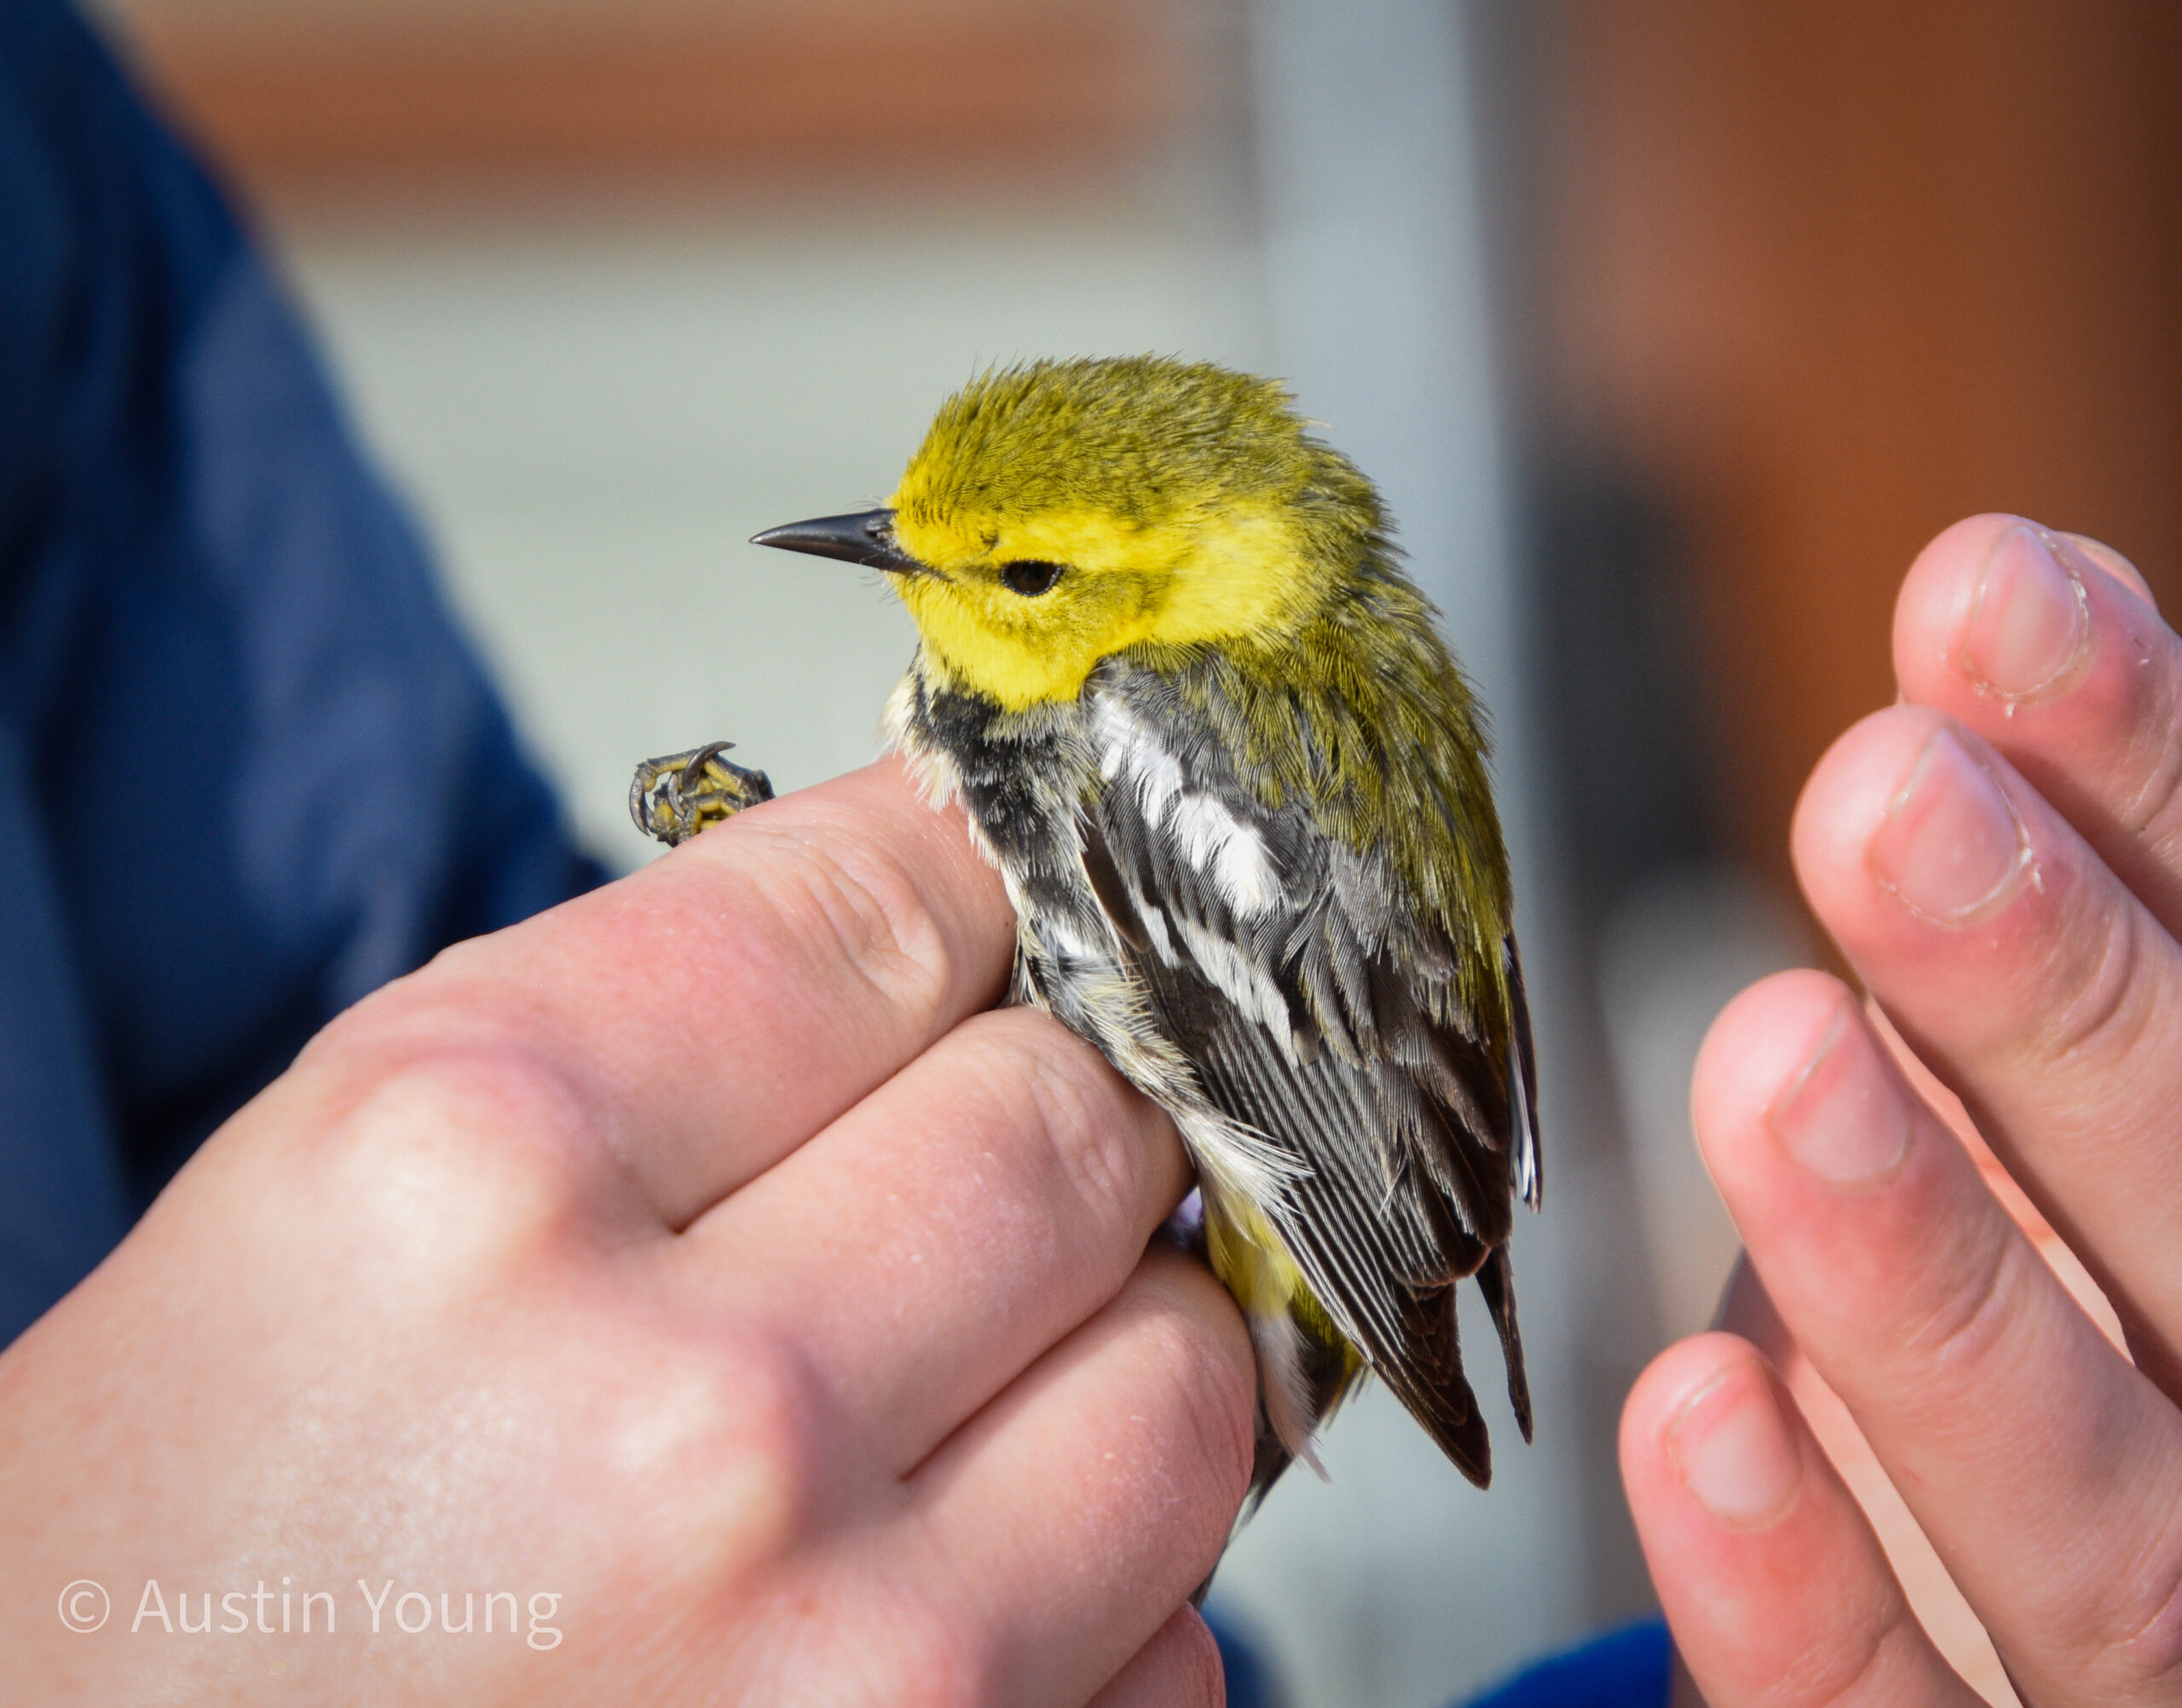 Bird held in biologist's hand